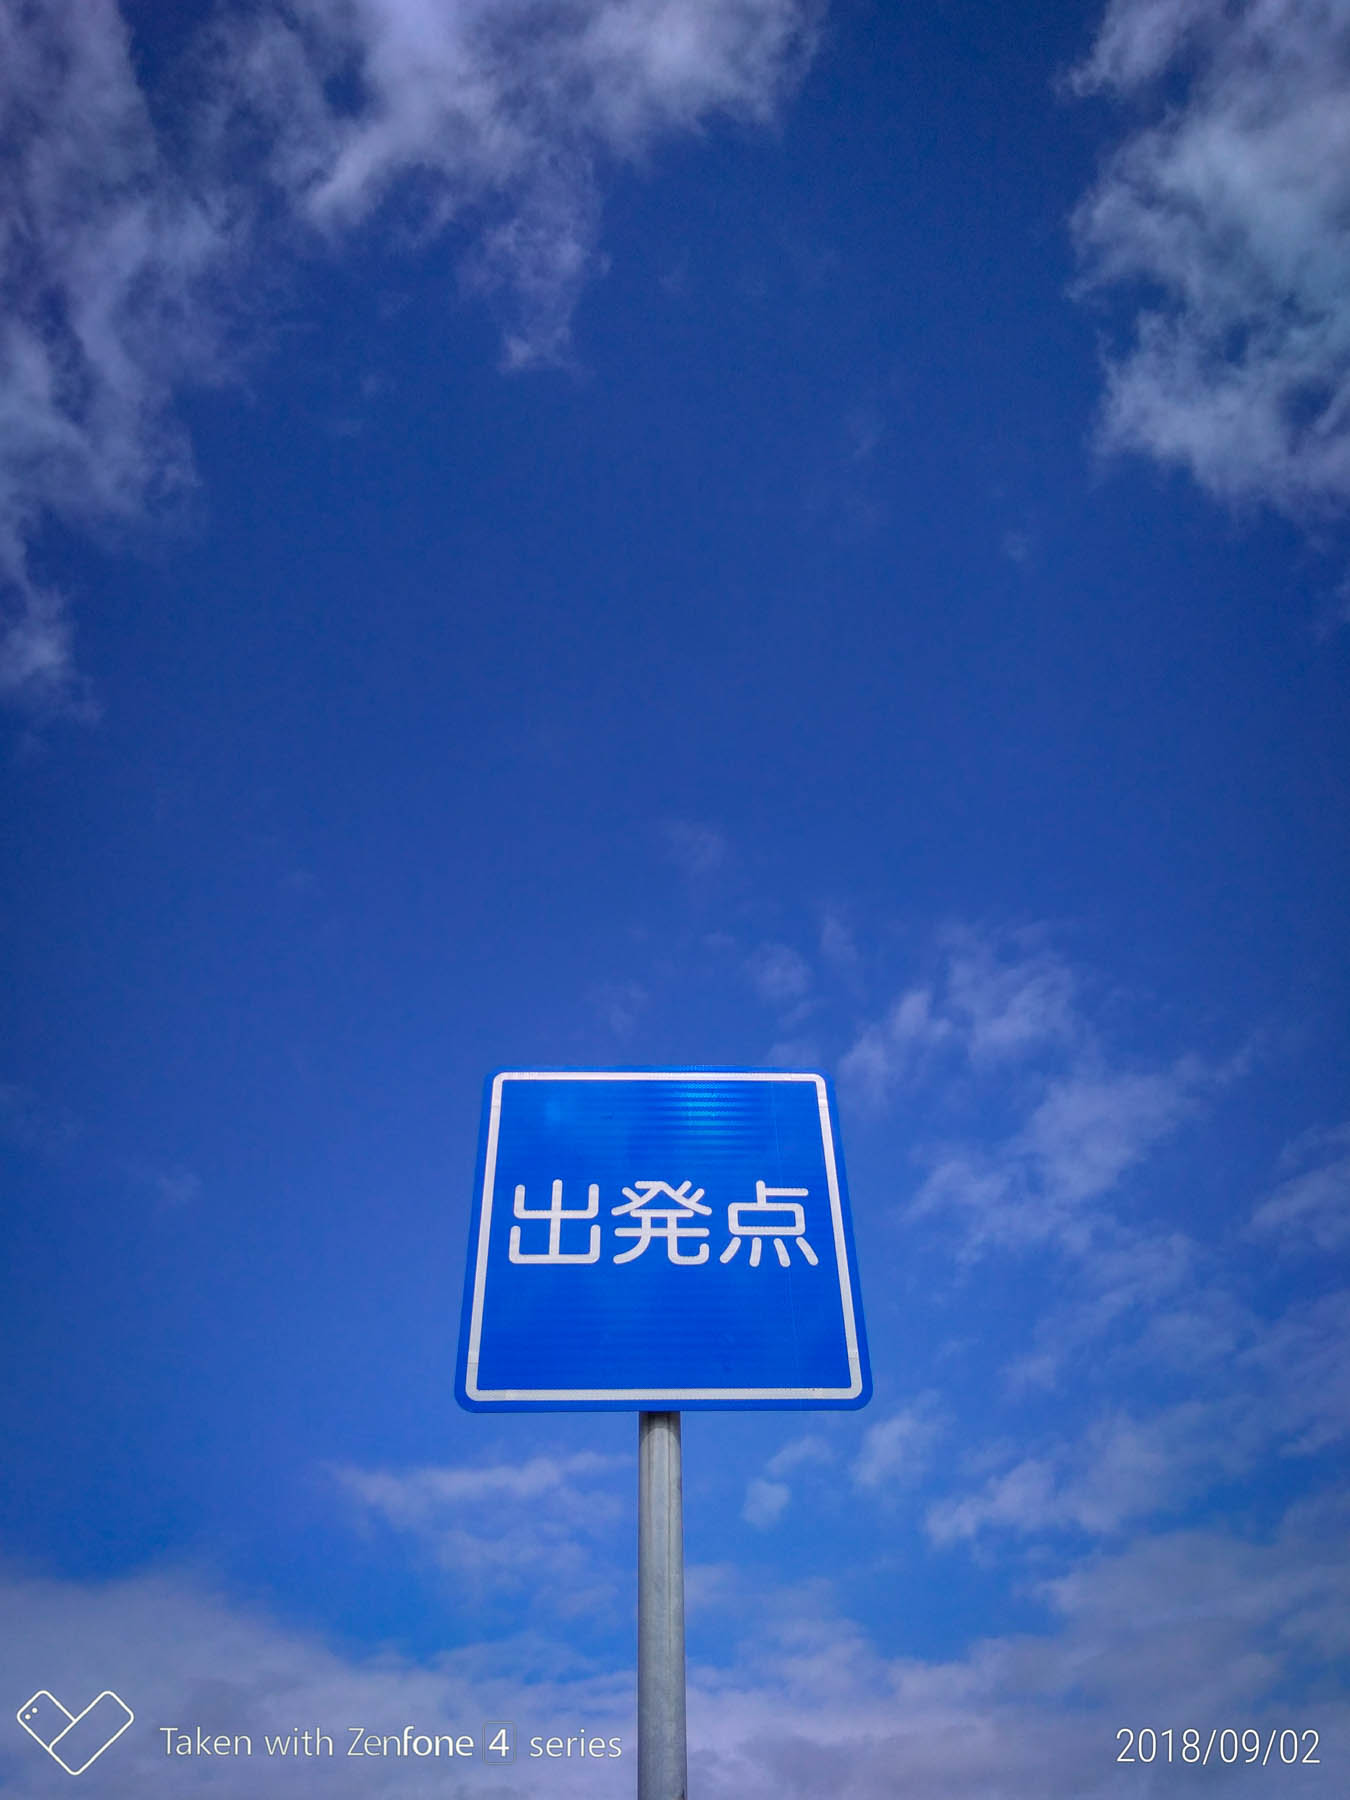 自動車試験場の標識と青い空